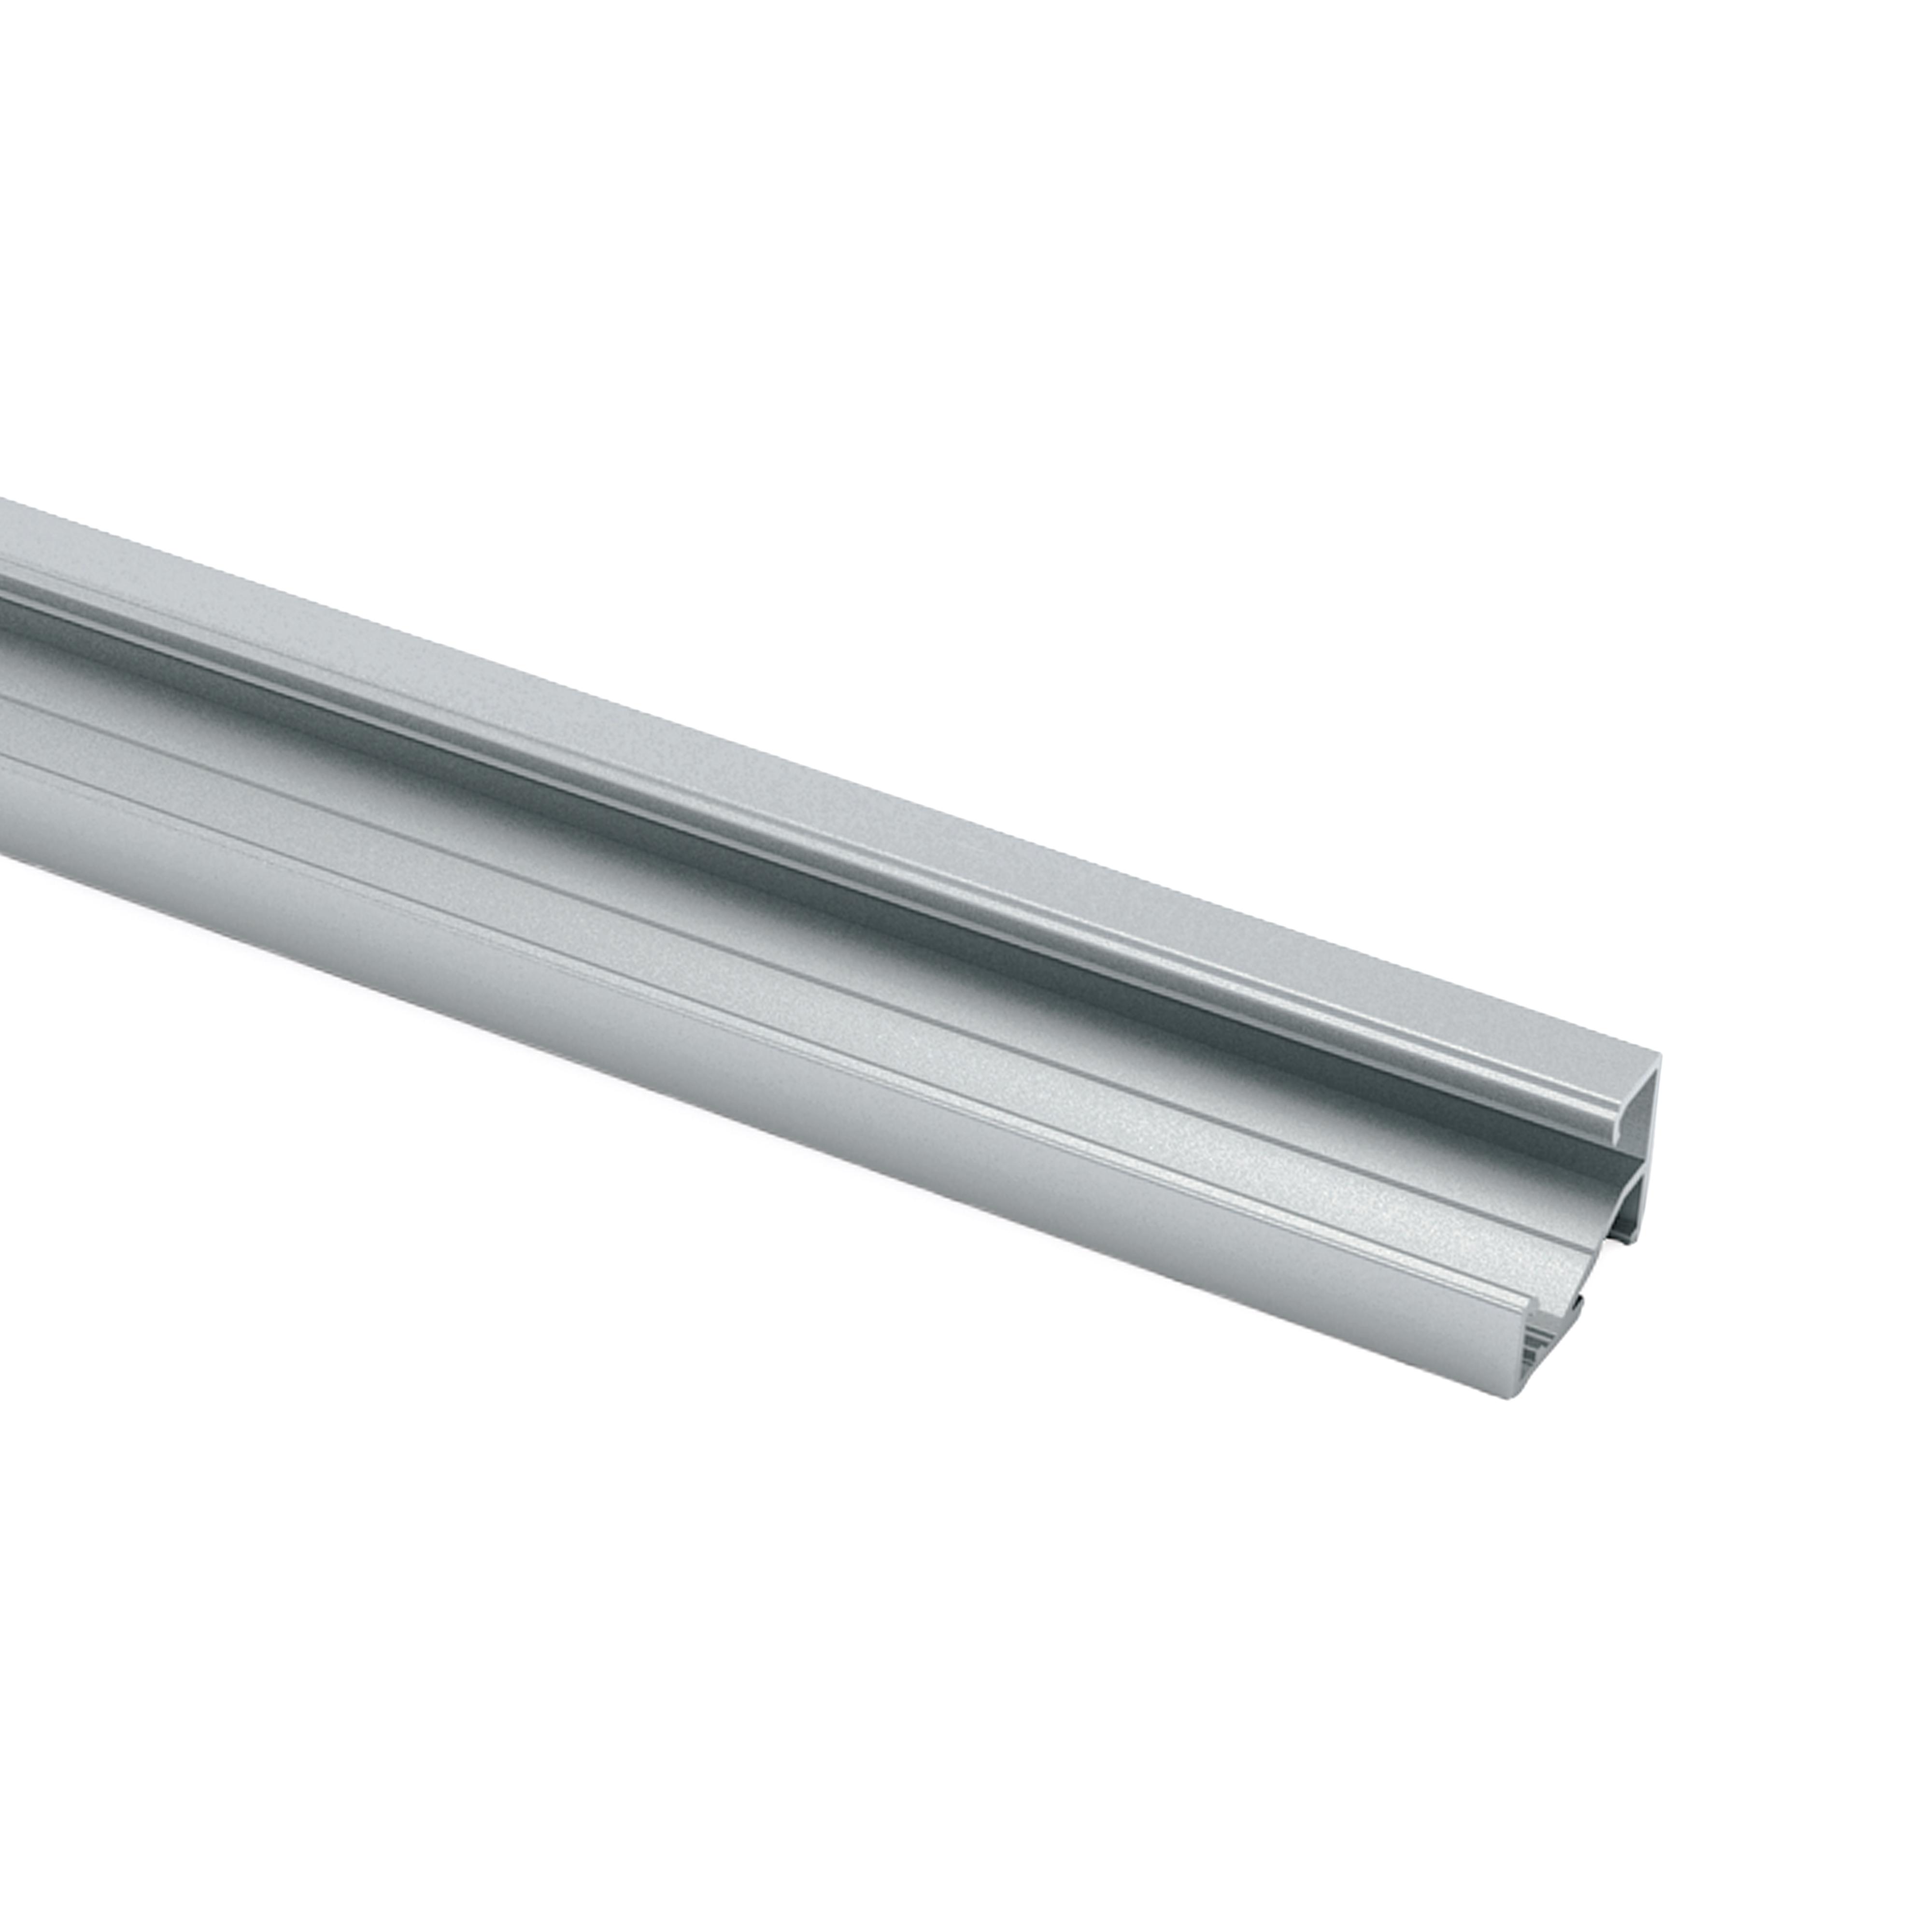 Perfil de aluminio para tira LED 2 metros con tapa listo para